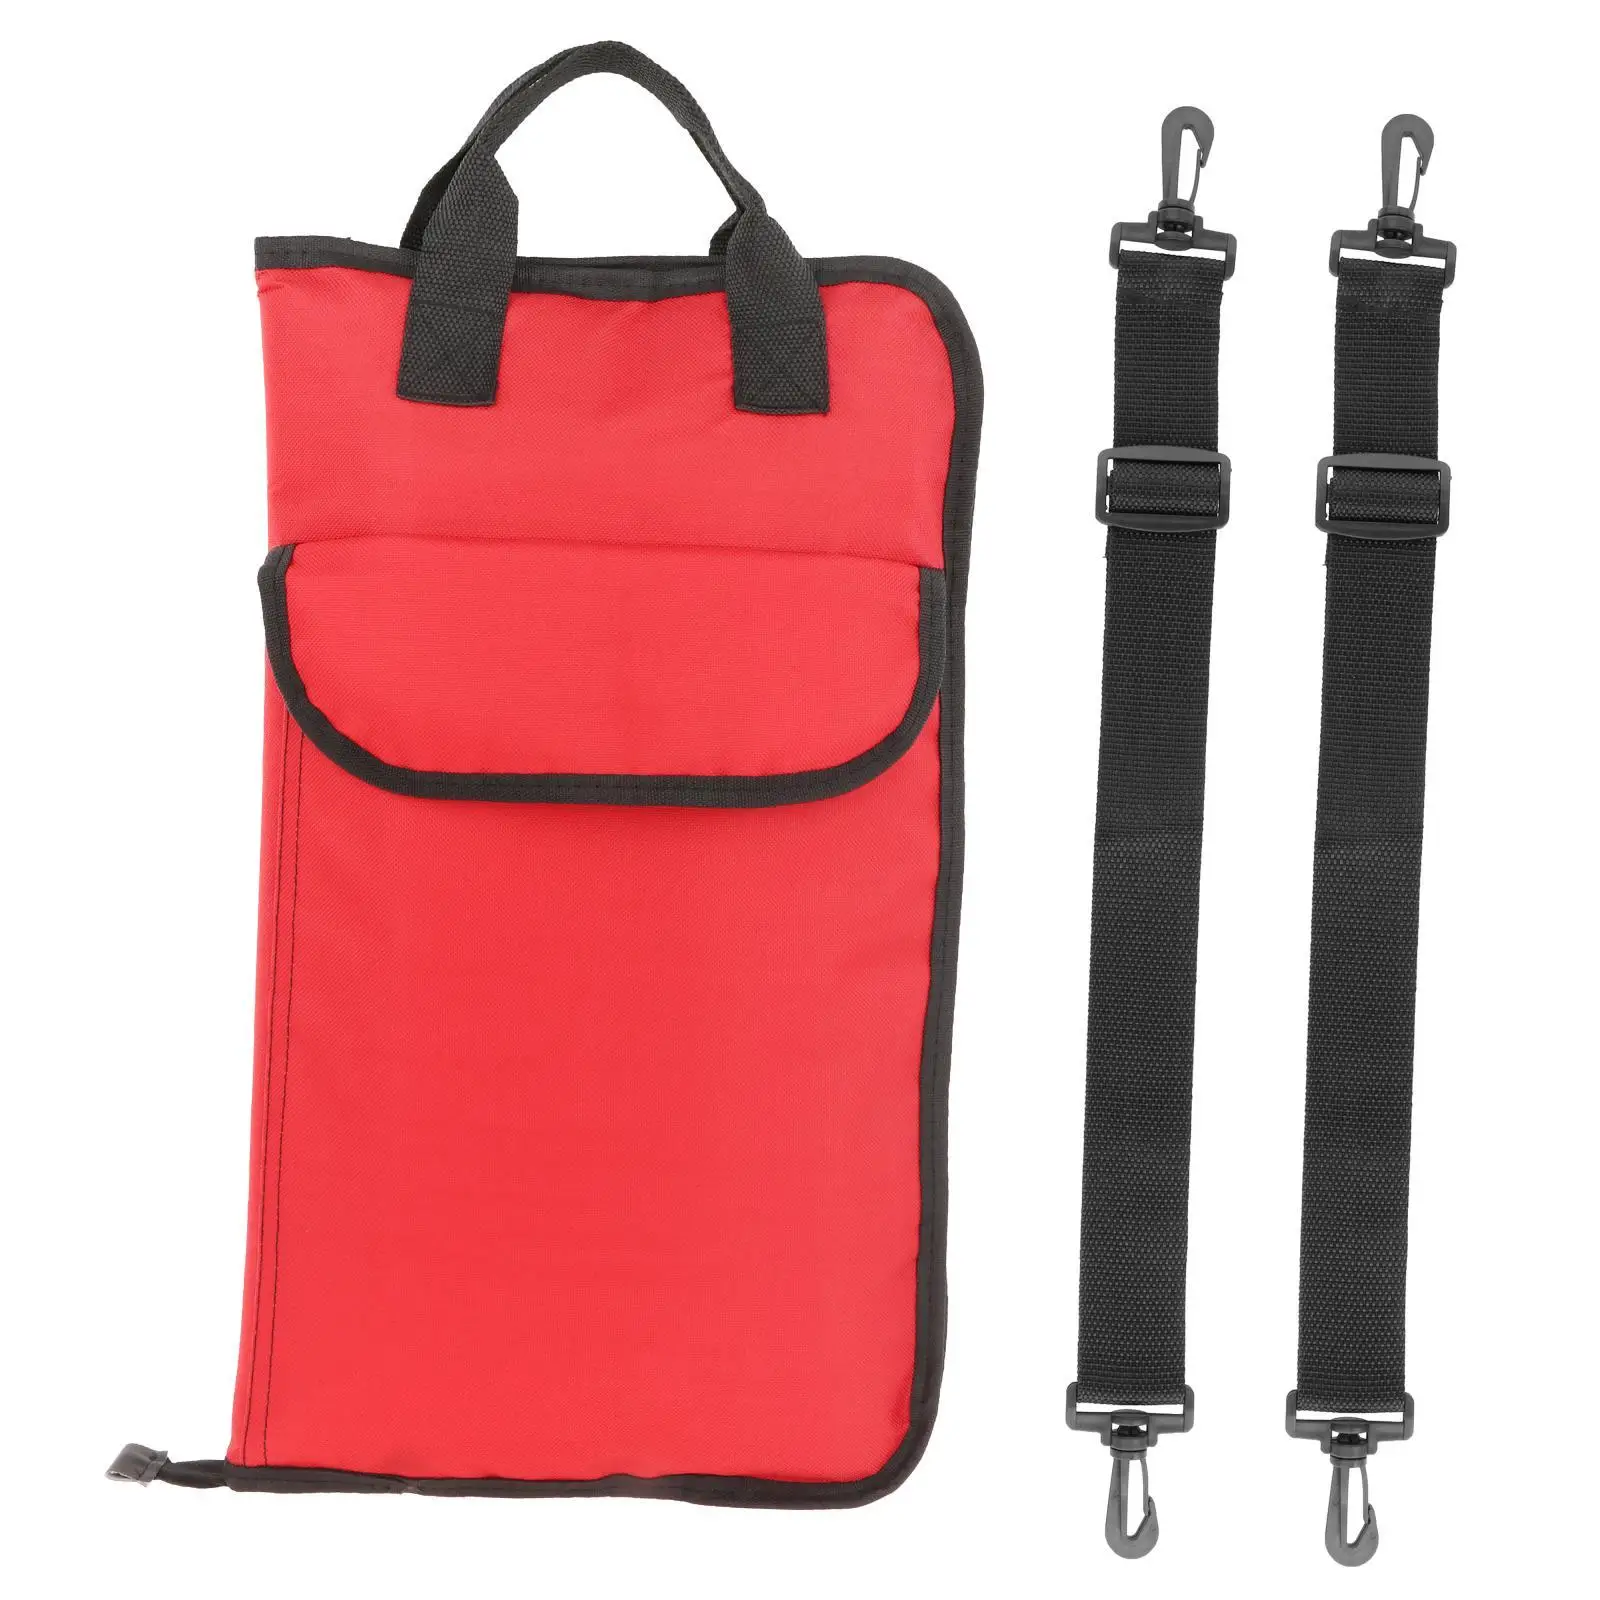  Bag Holder Case,  Holder  Storage Hanging Bag  Portable Handbag